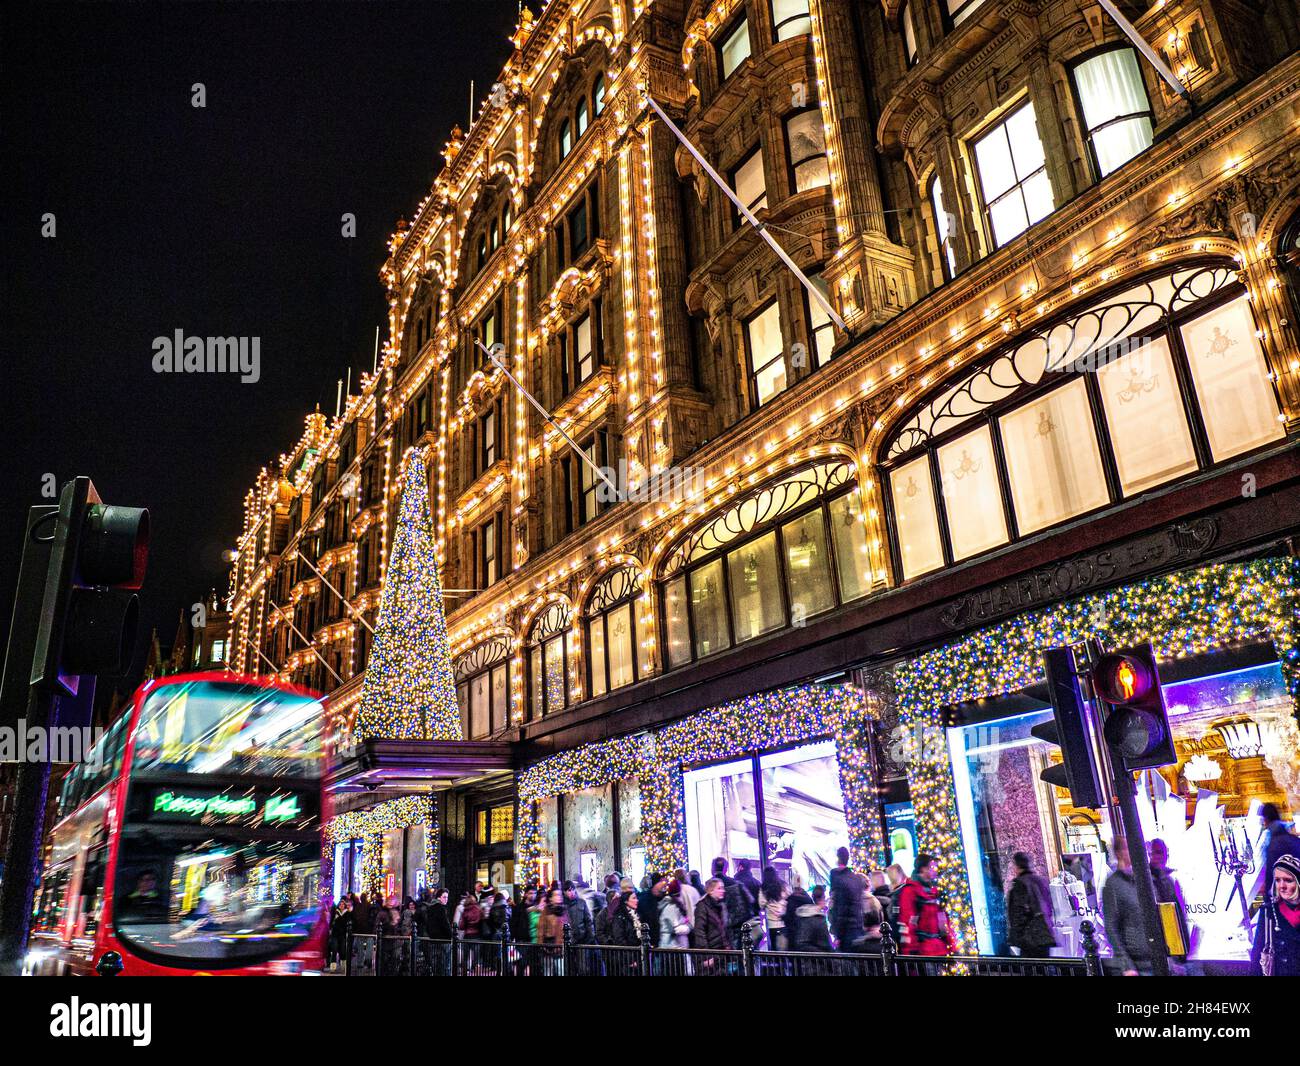 WEIHNACHTEN LONDON SHOPPER LICHTER HARRODS VERWISCHEN DAS GESCHÄFTIGE LONDONER Kaufhaus Harrods in der Abenddämmerung mit Weihnachtslichtern, Einkaufsmassen und dem roten Bus Knightsbridge London SW1 Stockfoto